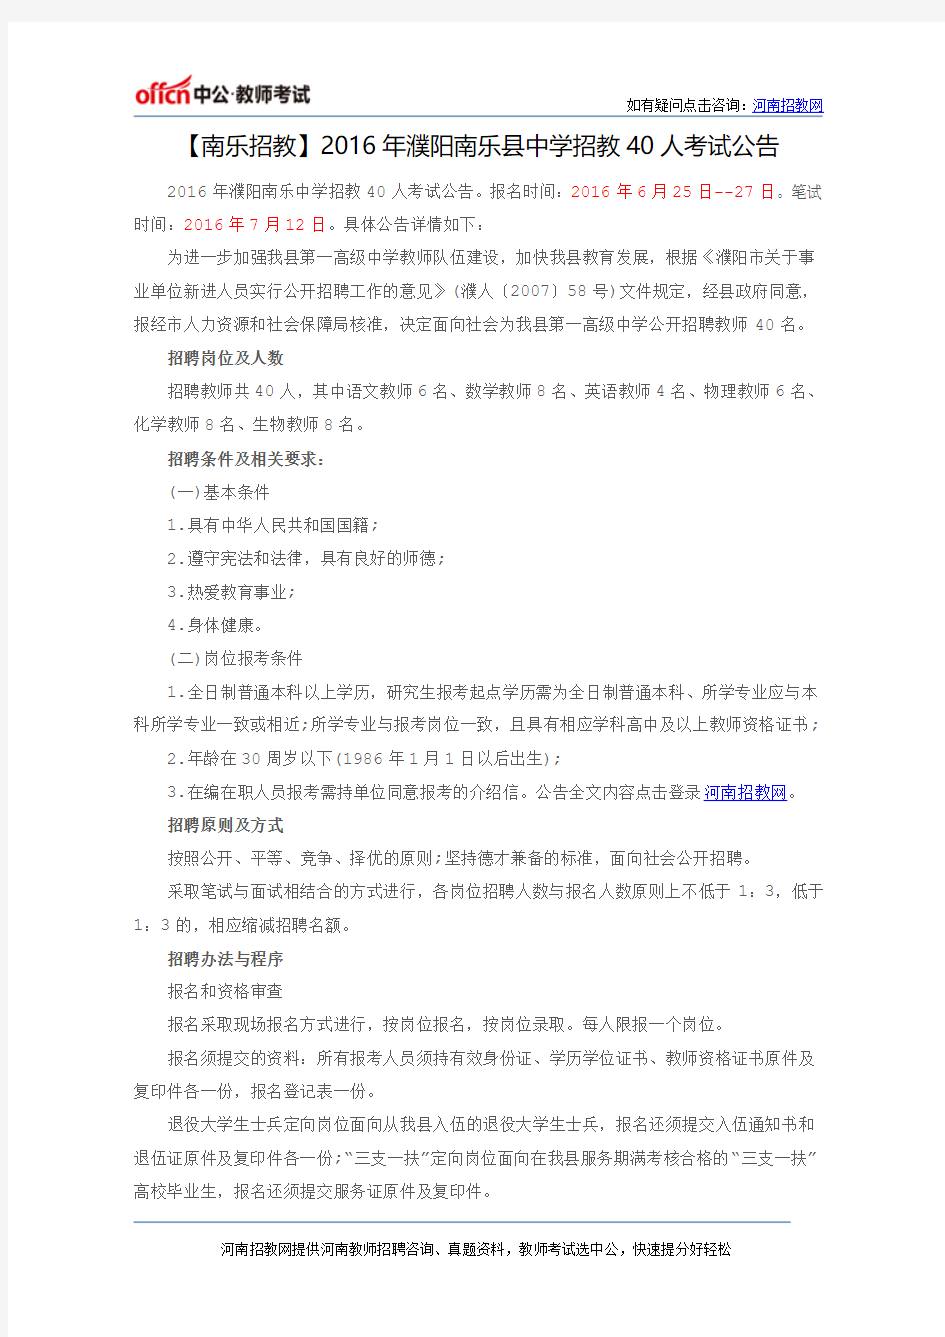 【南乐招教】2016年濮阳南乐县中学招教40人考试公告